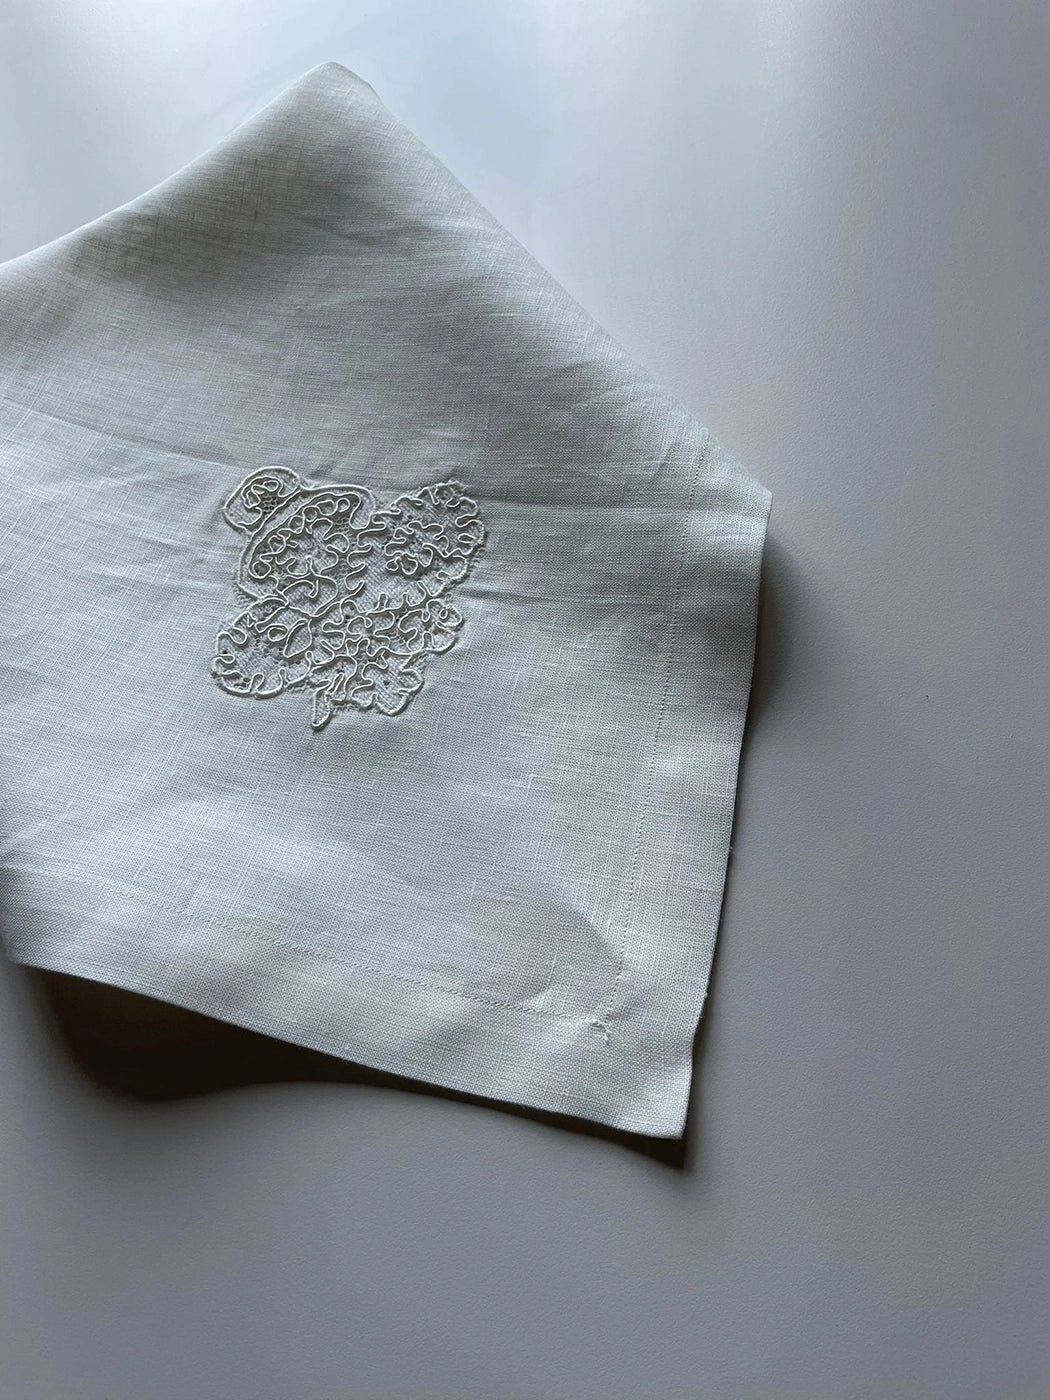 Linen Wedding Handkerchief